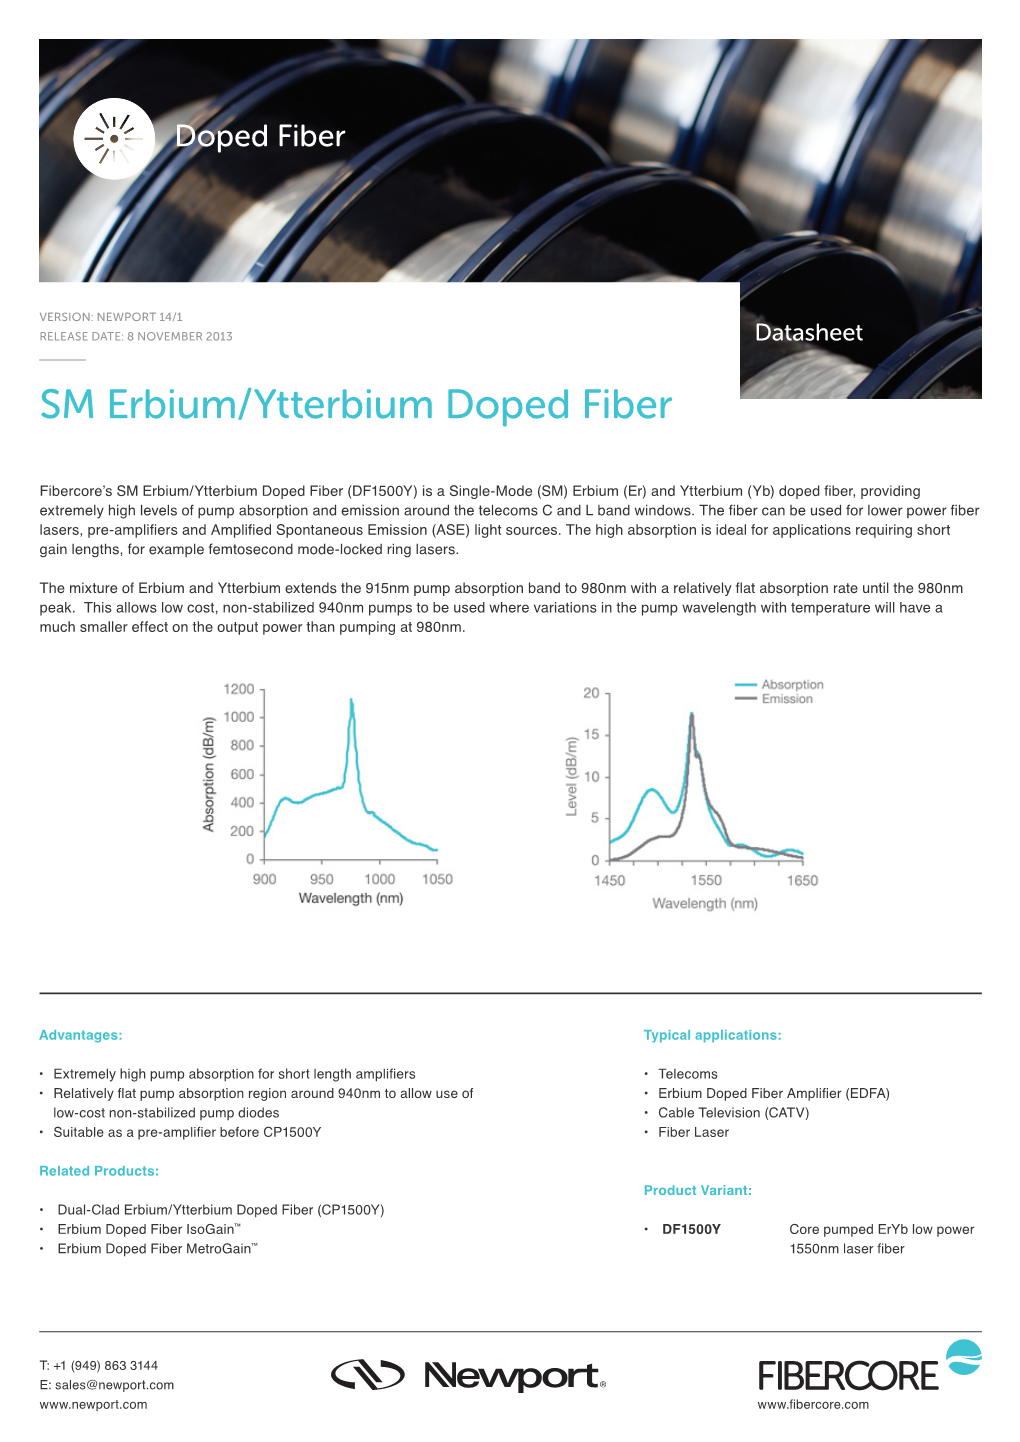 SM Erbium/Ytterbium Doped Fiber